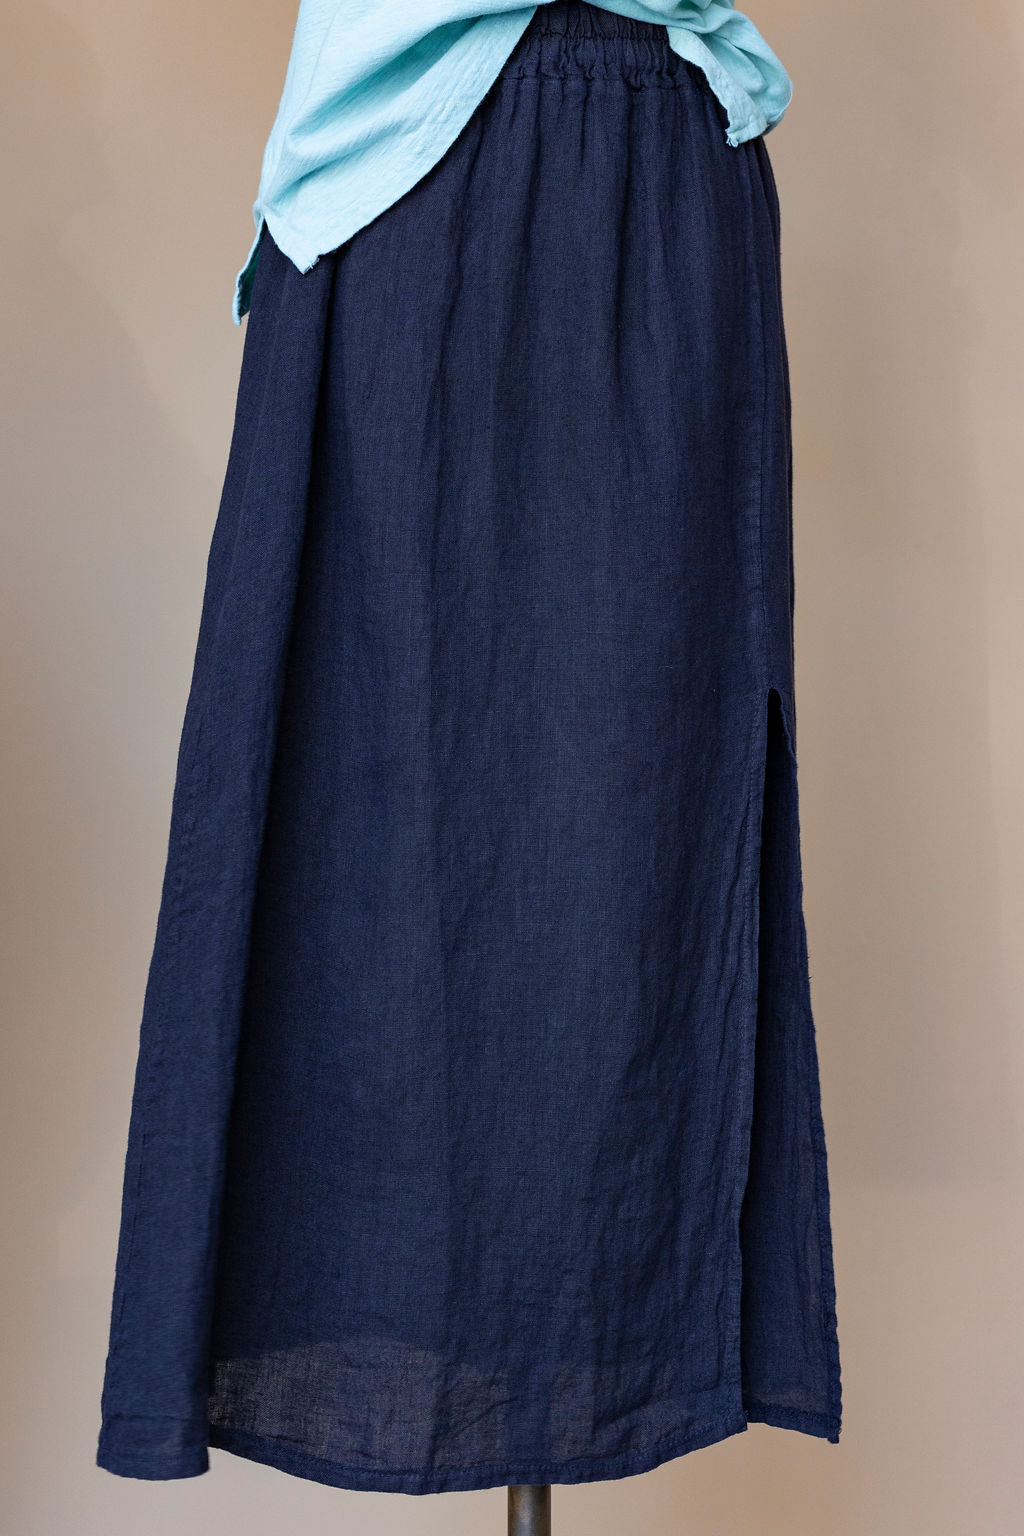 Pistache - Linen Skirt with Slit - Navy